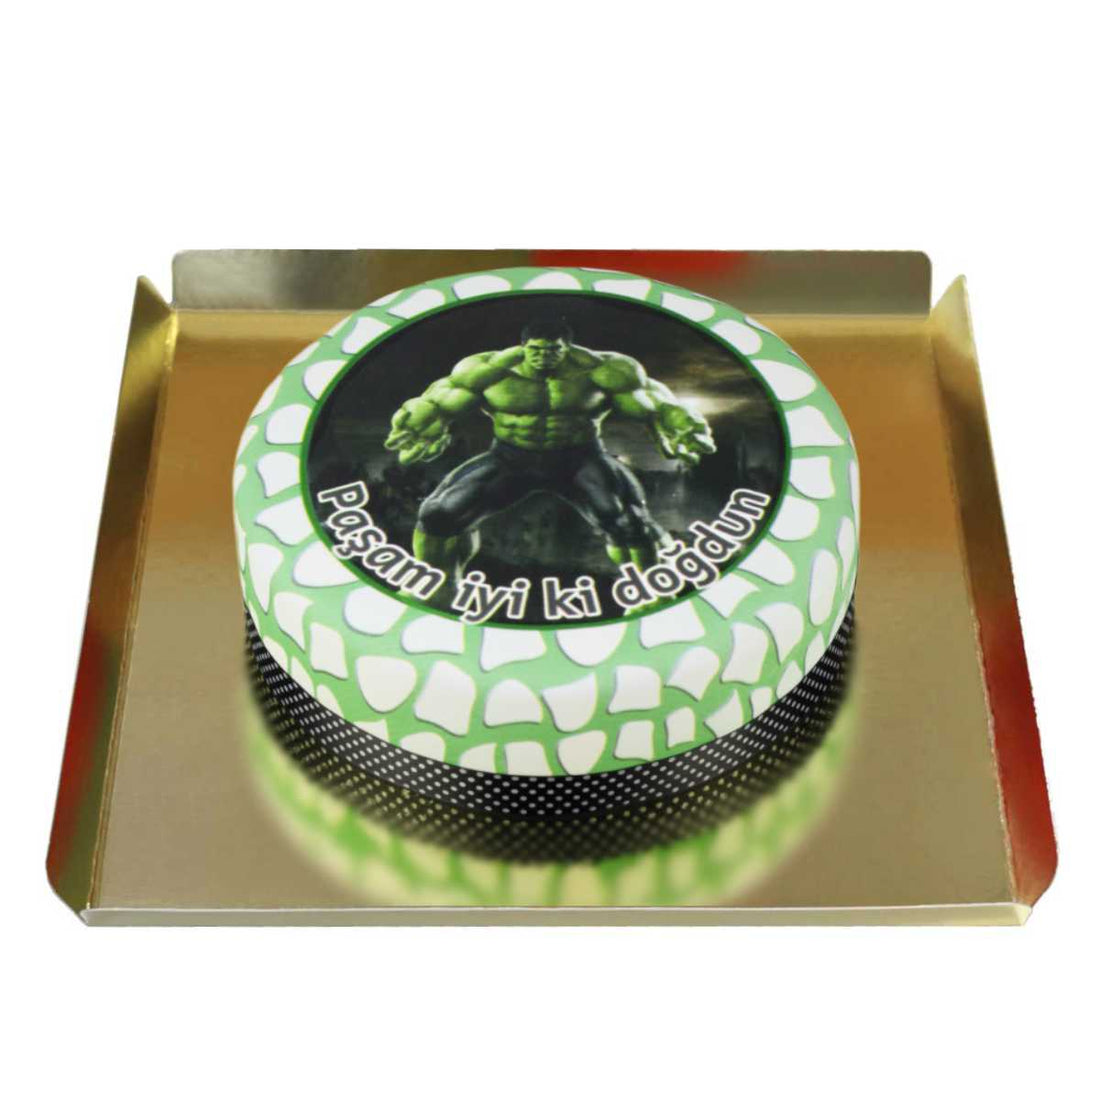 Hulk Doğum Günü Pastası